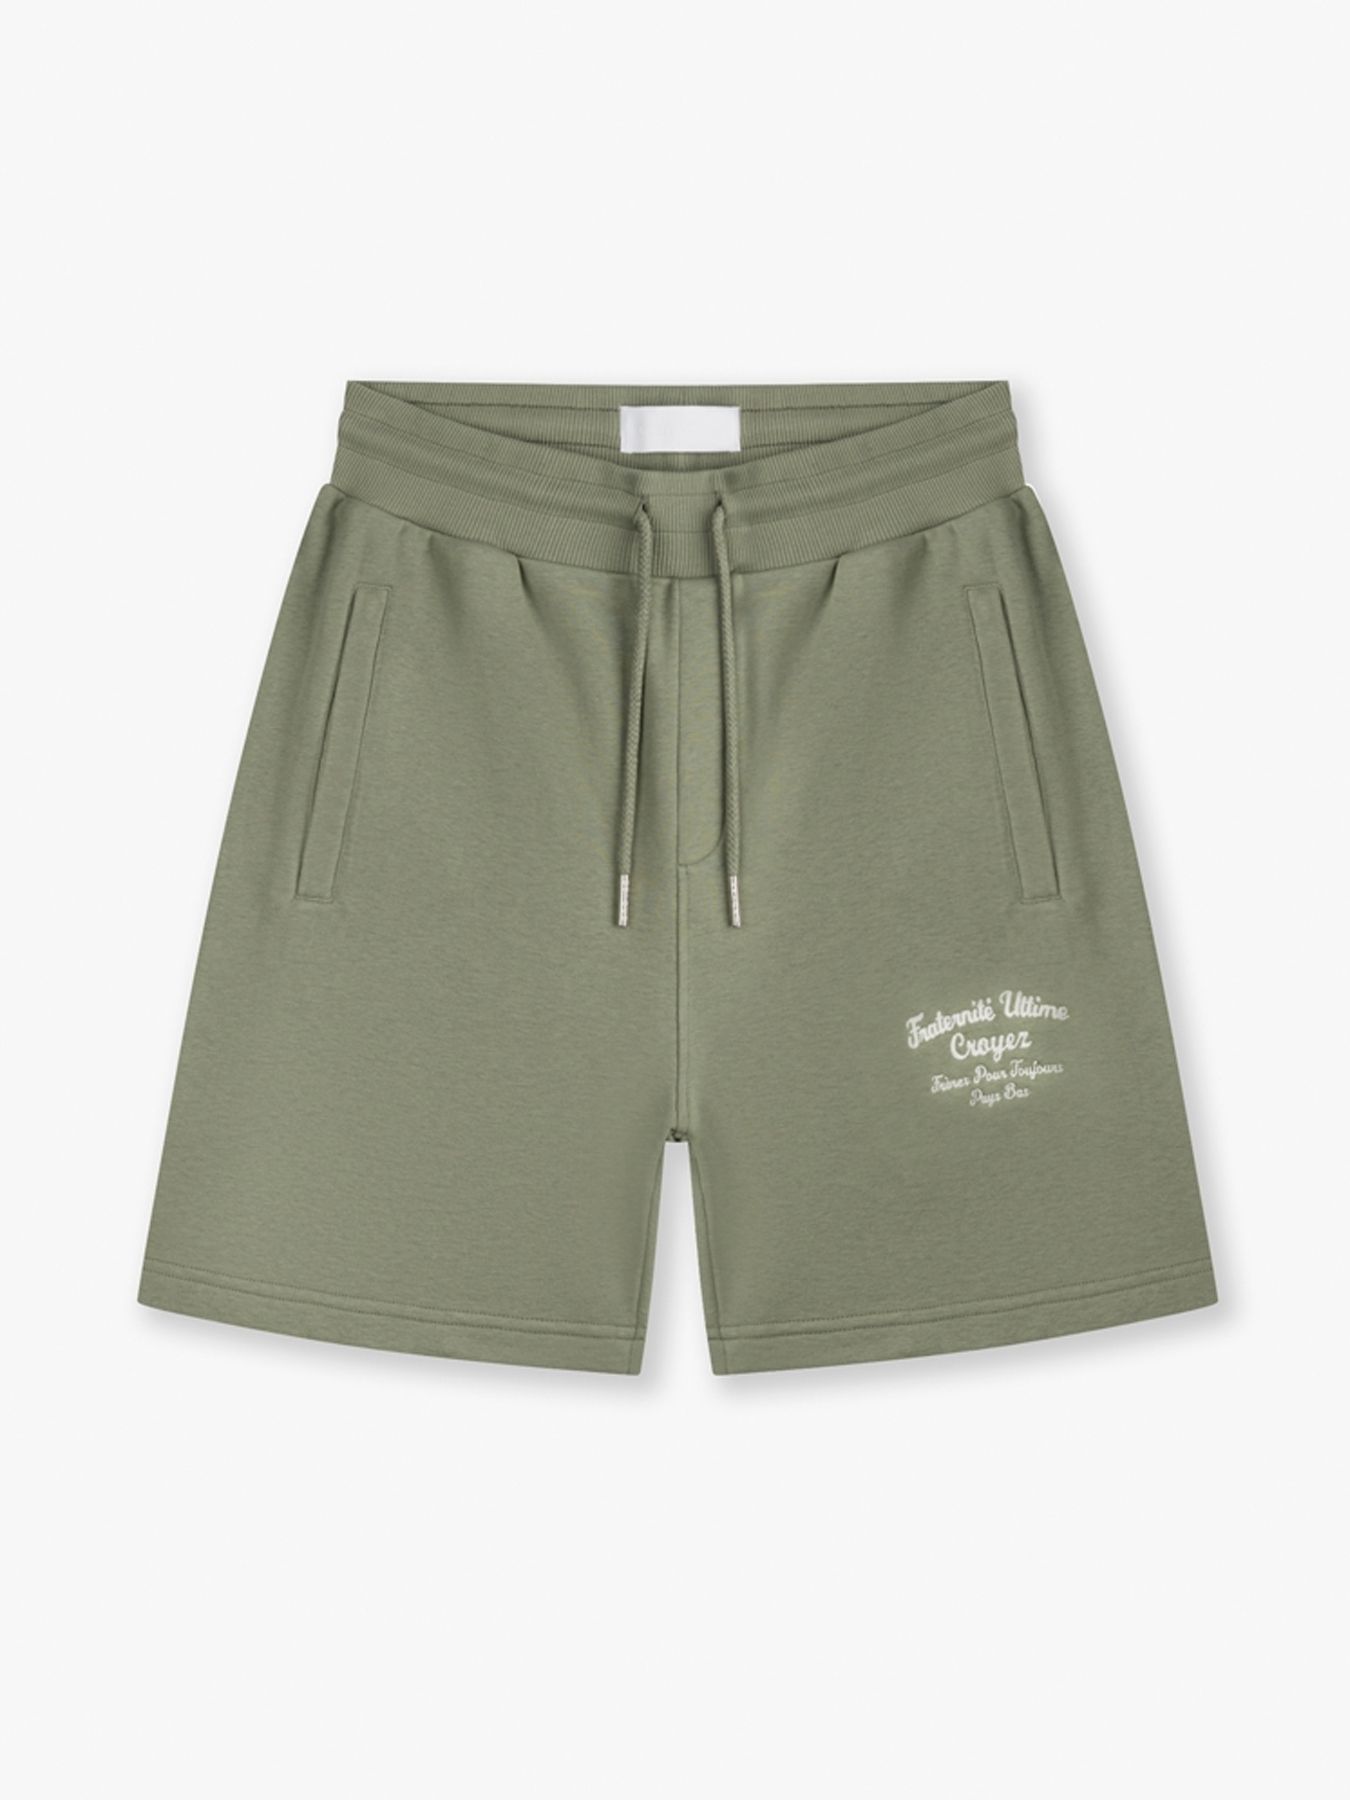 Croyez Fraternite shorts Washed Olive 2900147004061